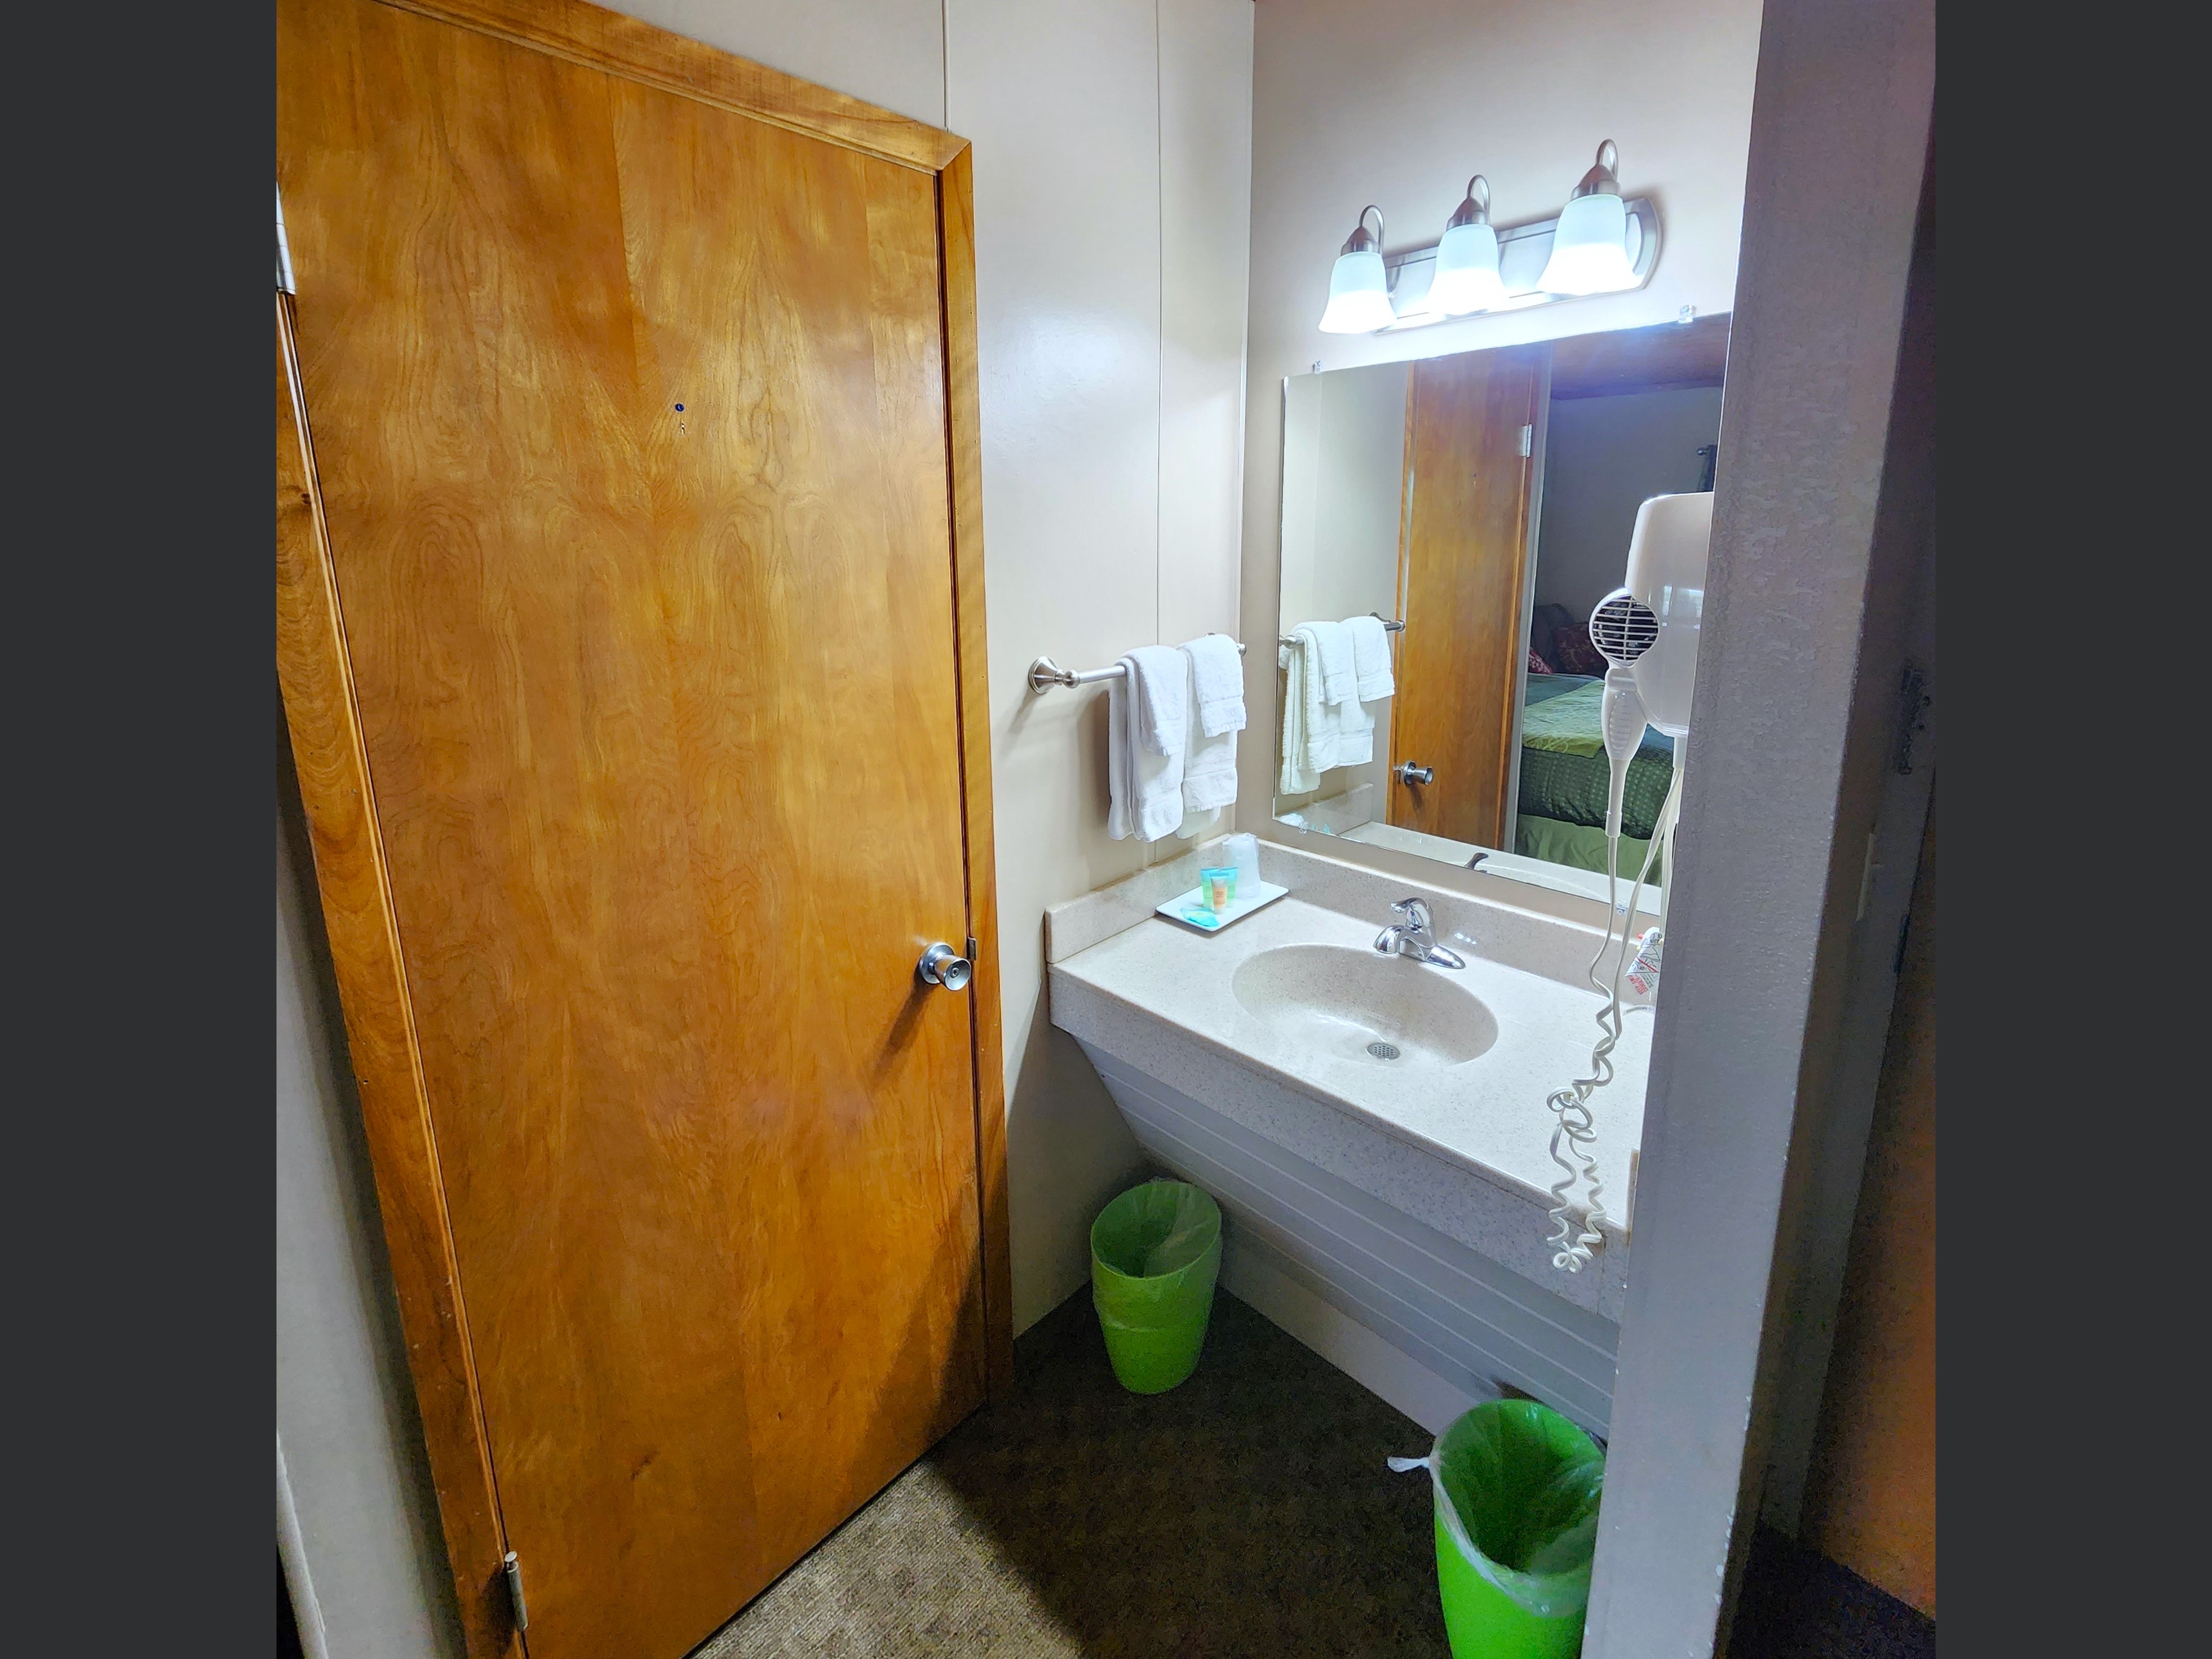 King Suite Room's Bathroom Vanity